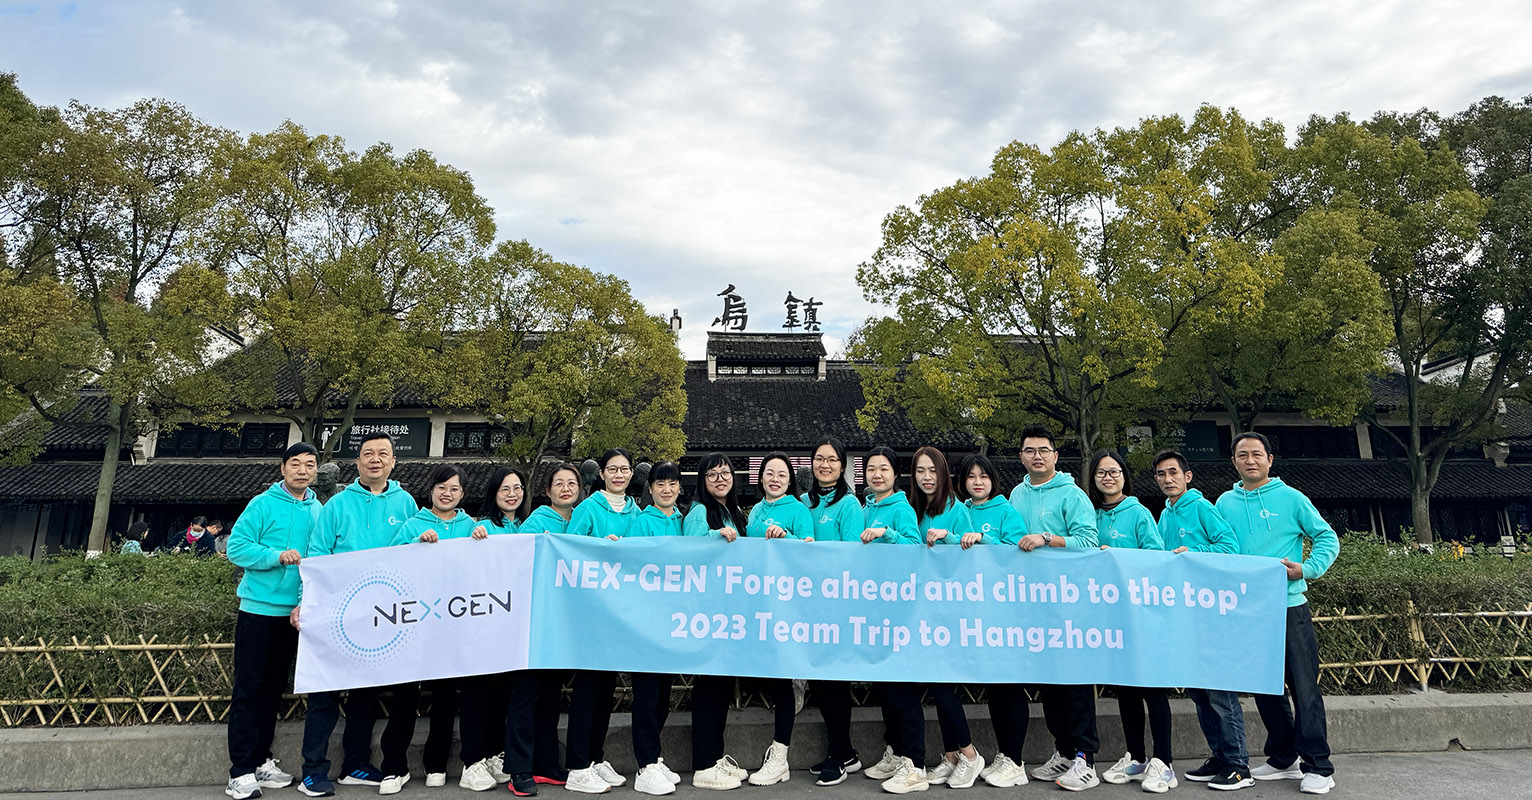 NEX-GEN' Machen Sie Fortschritte und erklimmen Sie die Spitze' 2023 Teamreise nach Hangzhou